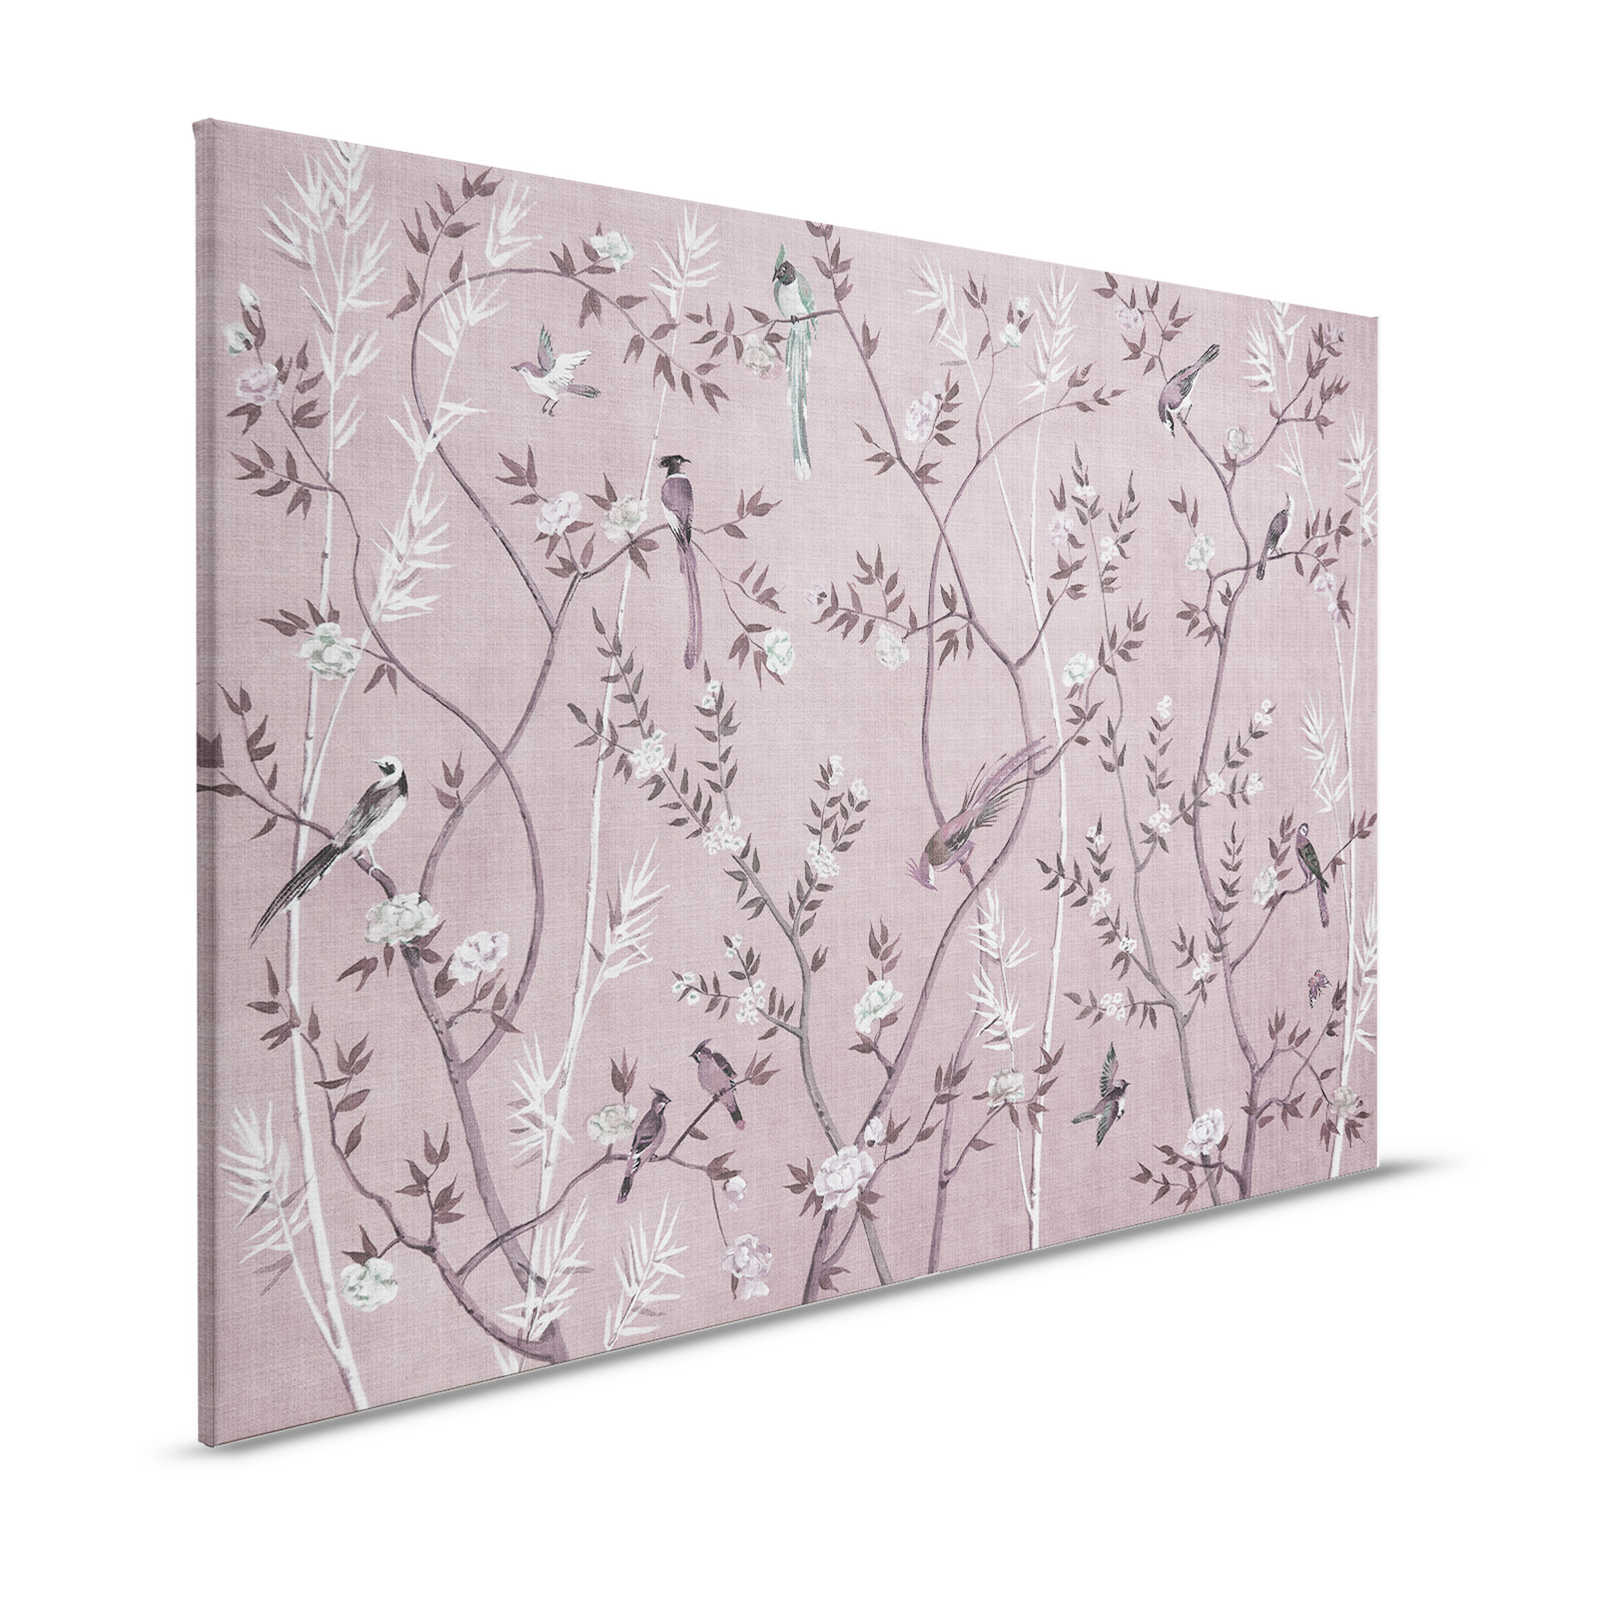 Tea Room 3 - toile oiseaux & fleurs design rose & blanc - 1,20 m x 0,80 m
